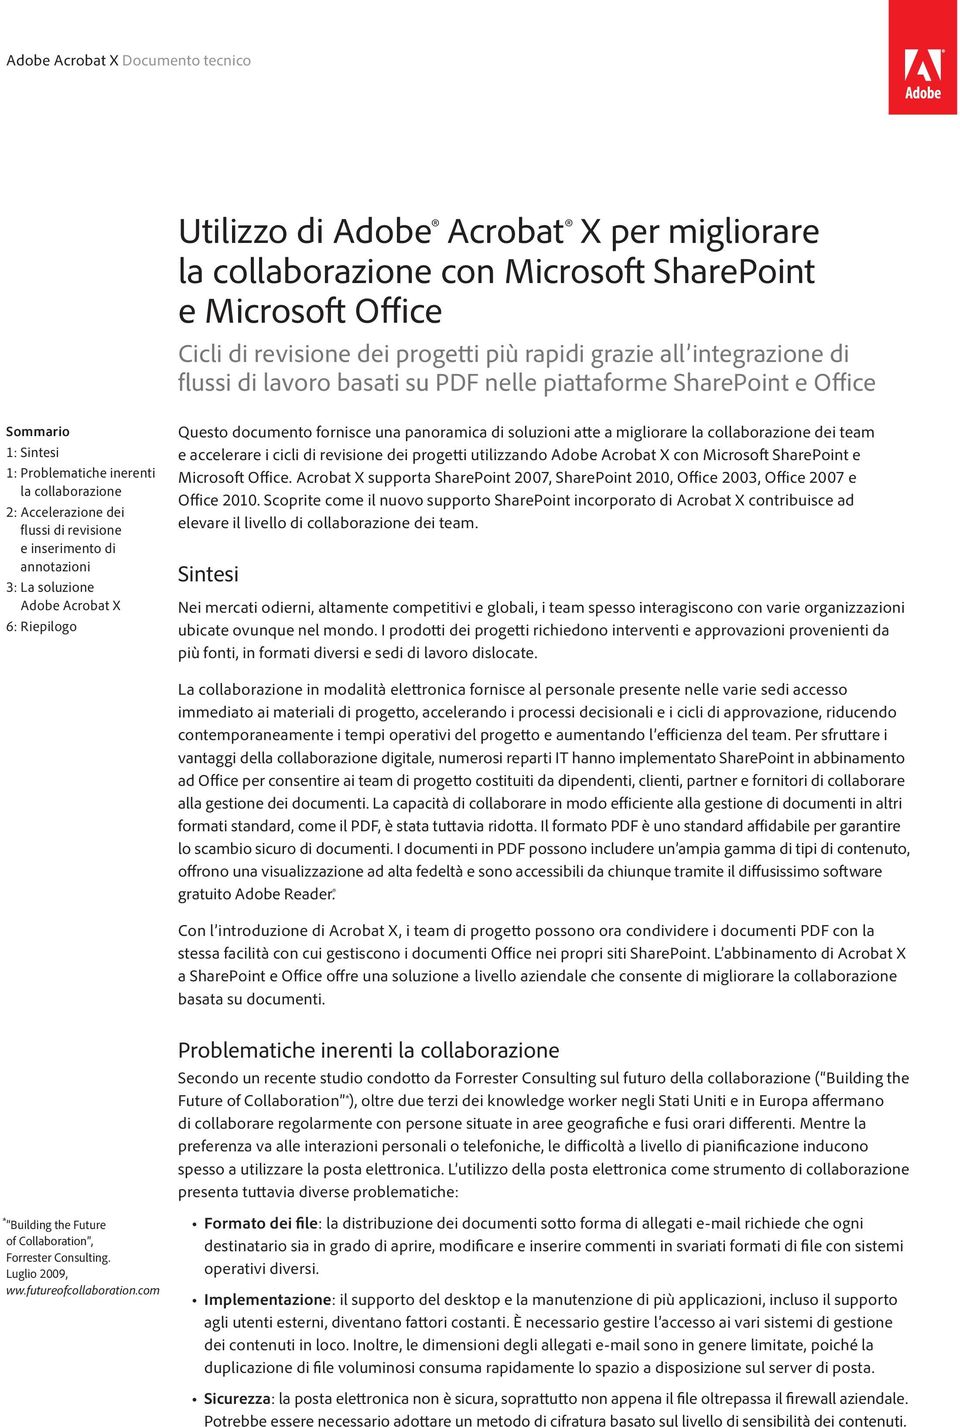 Adobe Acrobat X 6: Riepilogo Questo documento fornisce una panoramica di soluzioni atte a migliorare la collaborazione dei team e accelerare i cicli di revisione dei progetti utilizzando Adobe